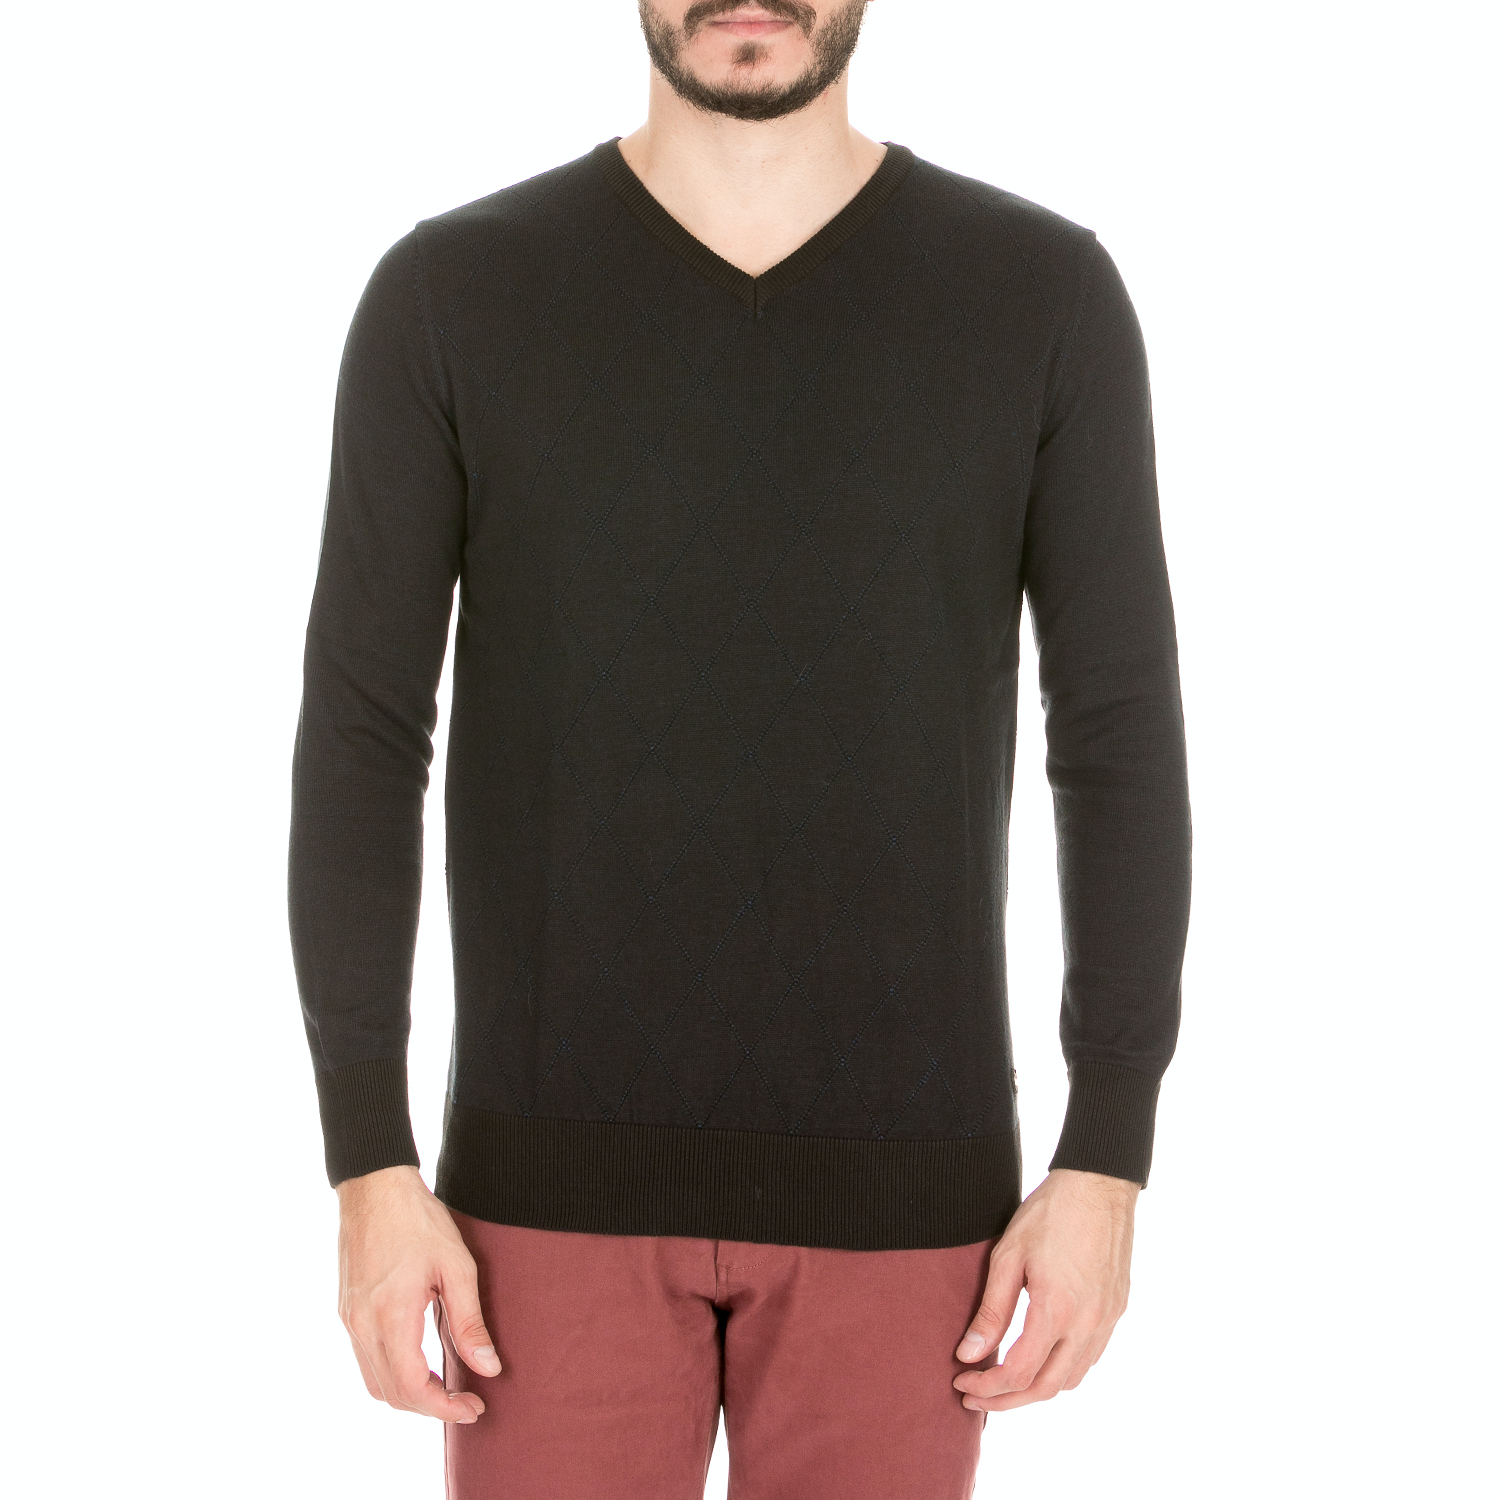 Ανδρικά/Ρούχα/Πλεκτά-Ζακέτες/Πουλόβερ GREENWOOD - Ανδρική πλεκτή μπλούζα GREENWOOD μαύρο